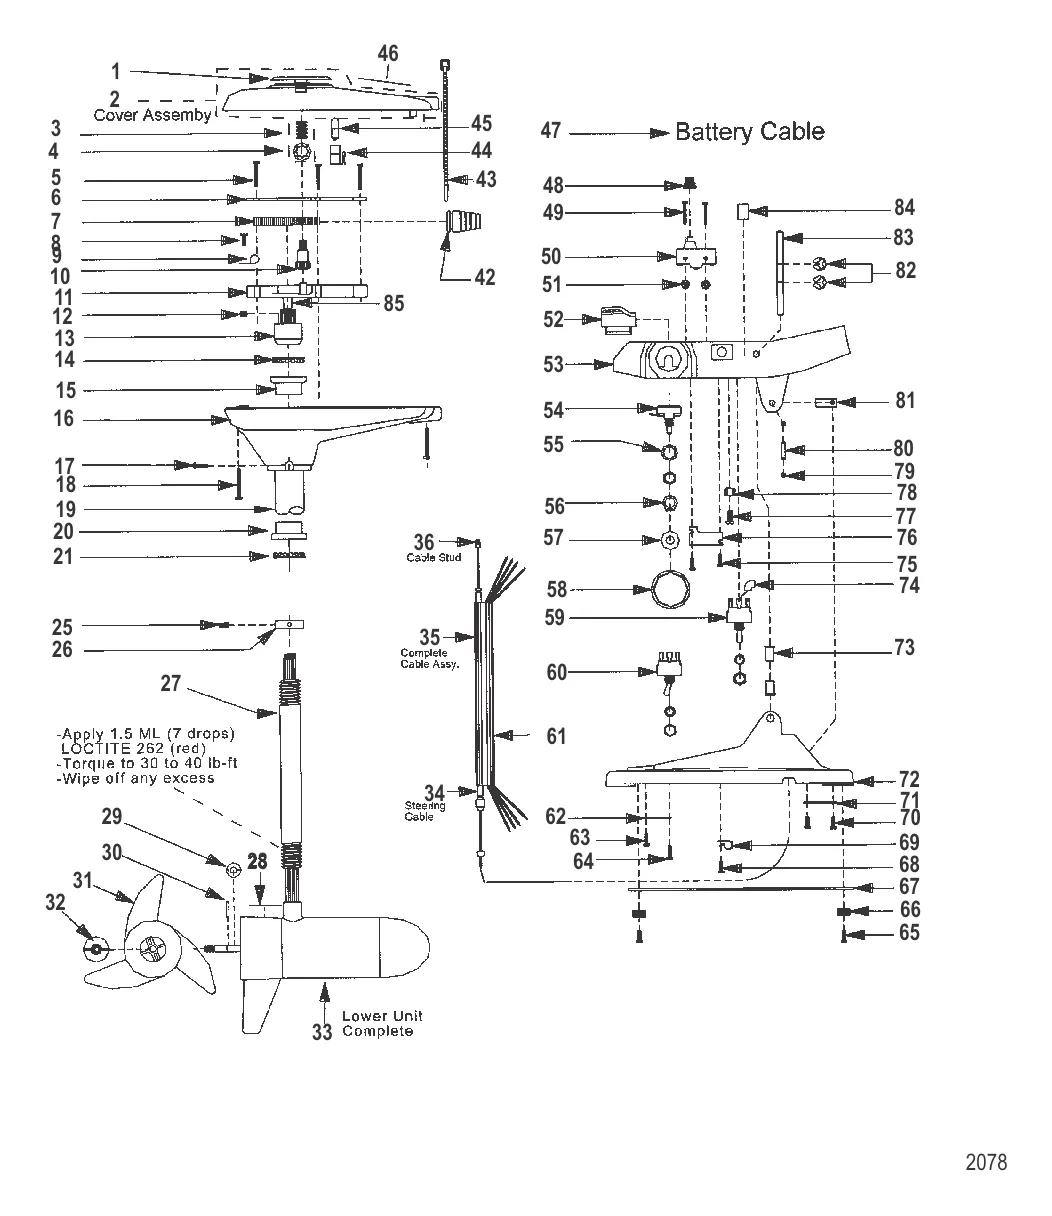 Двигатель для тралового лова в сборе (Модель 743) (12 В)